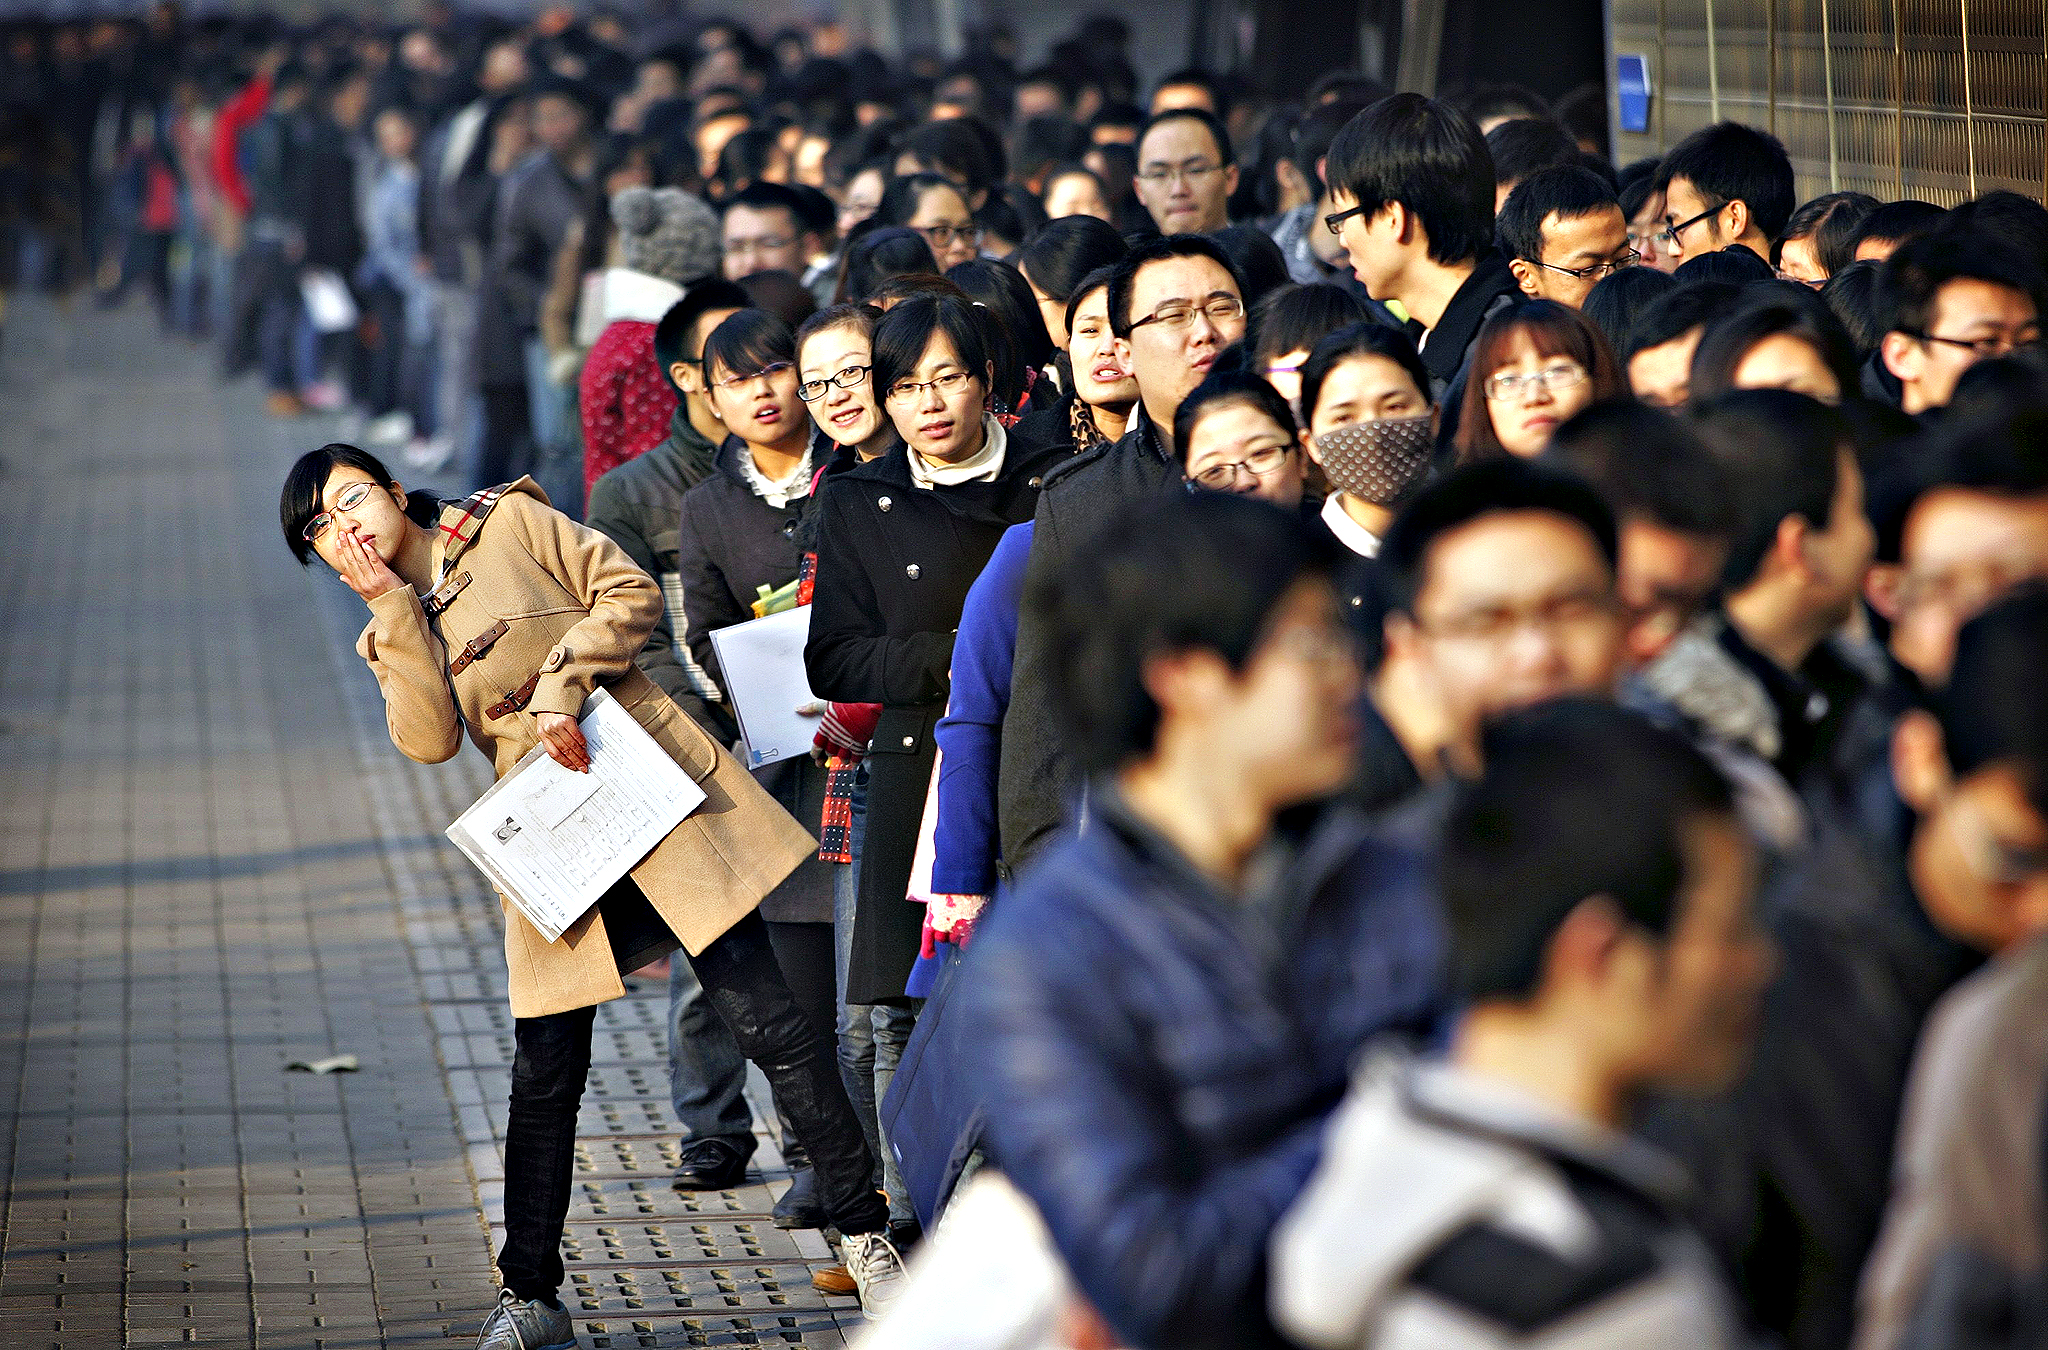 चीनमा चार महिनाभित्र ३३ करोड नयाँ रोजगारी सृजना